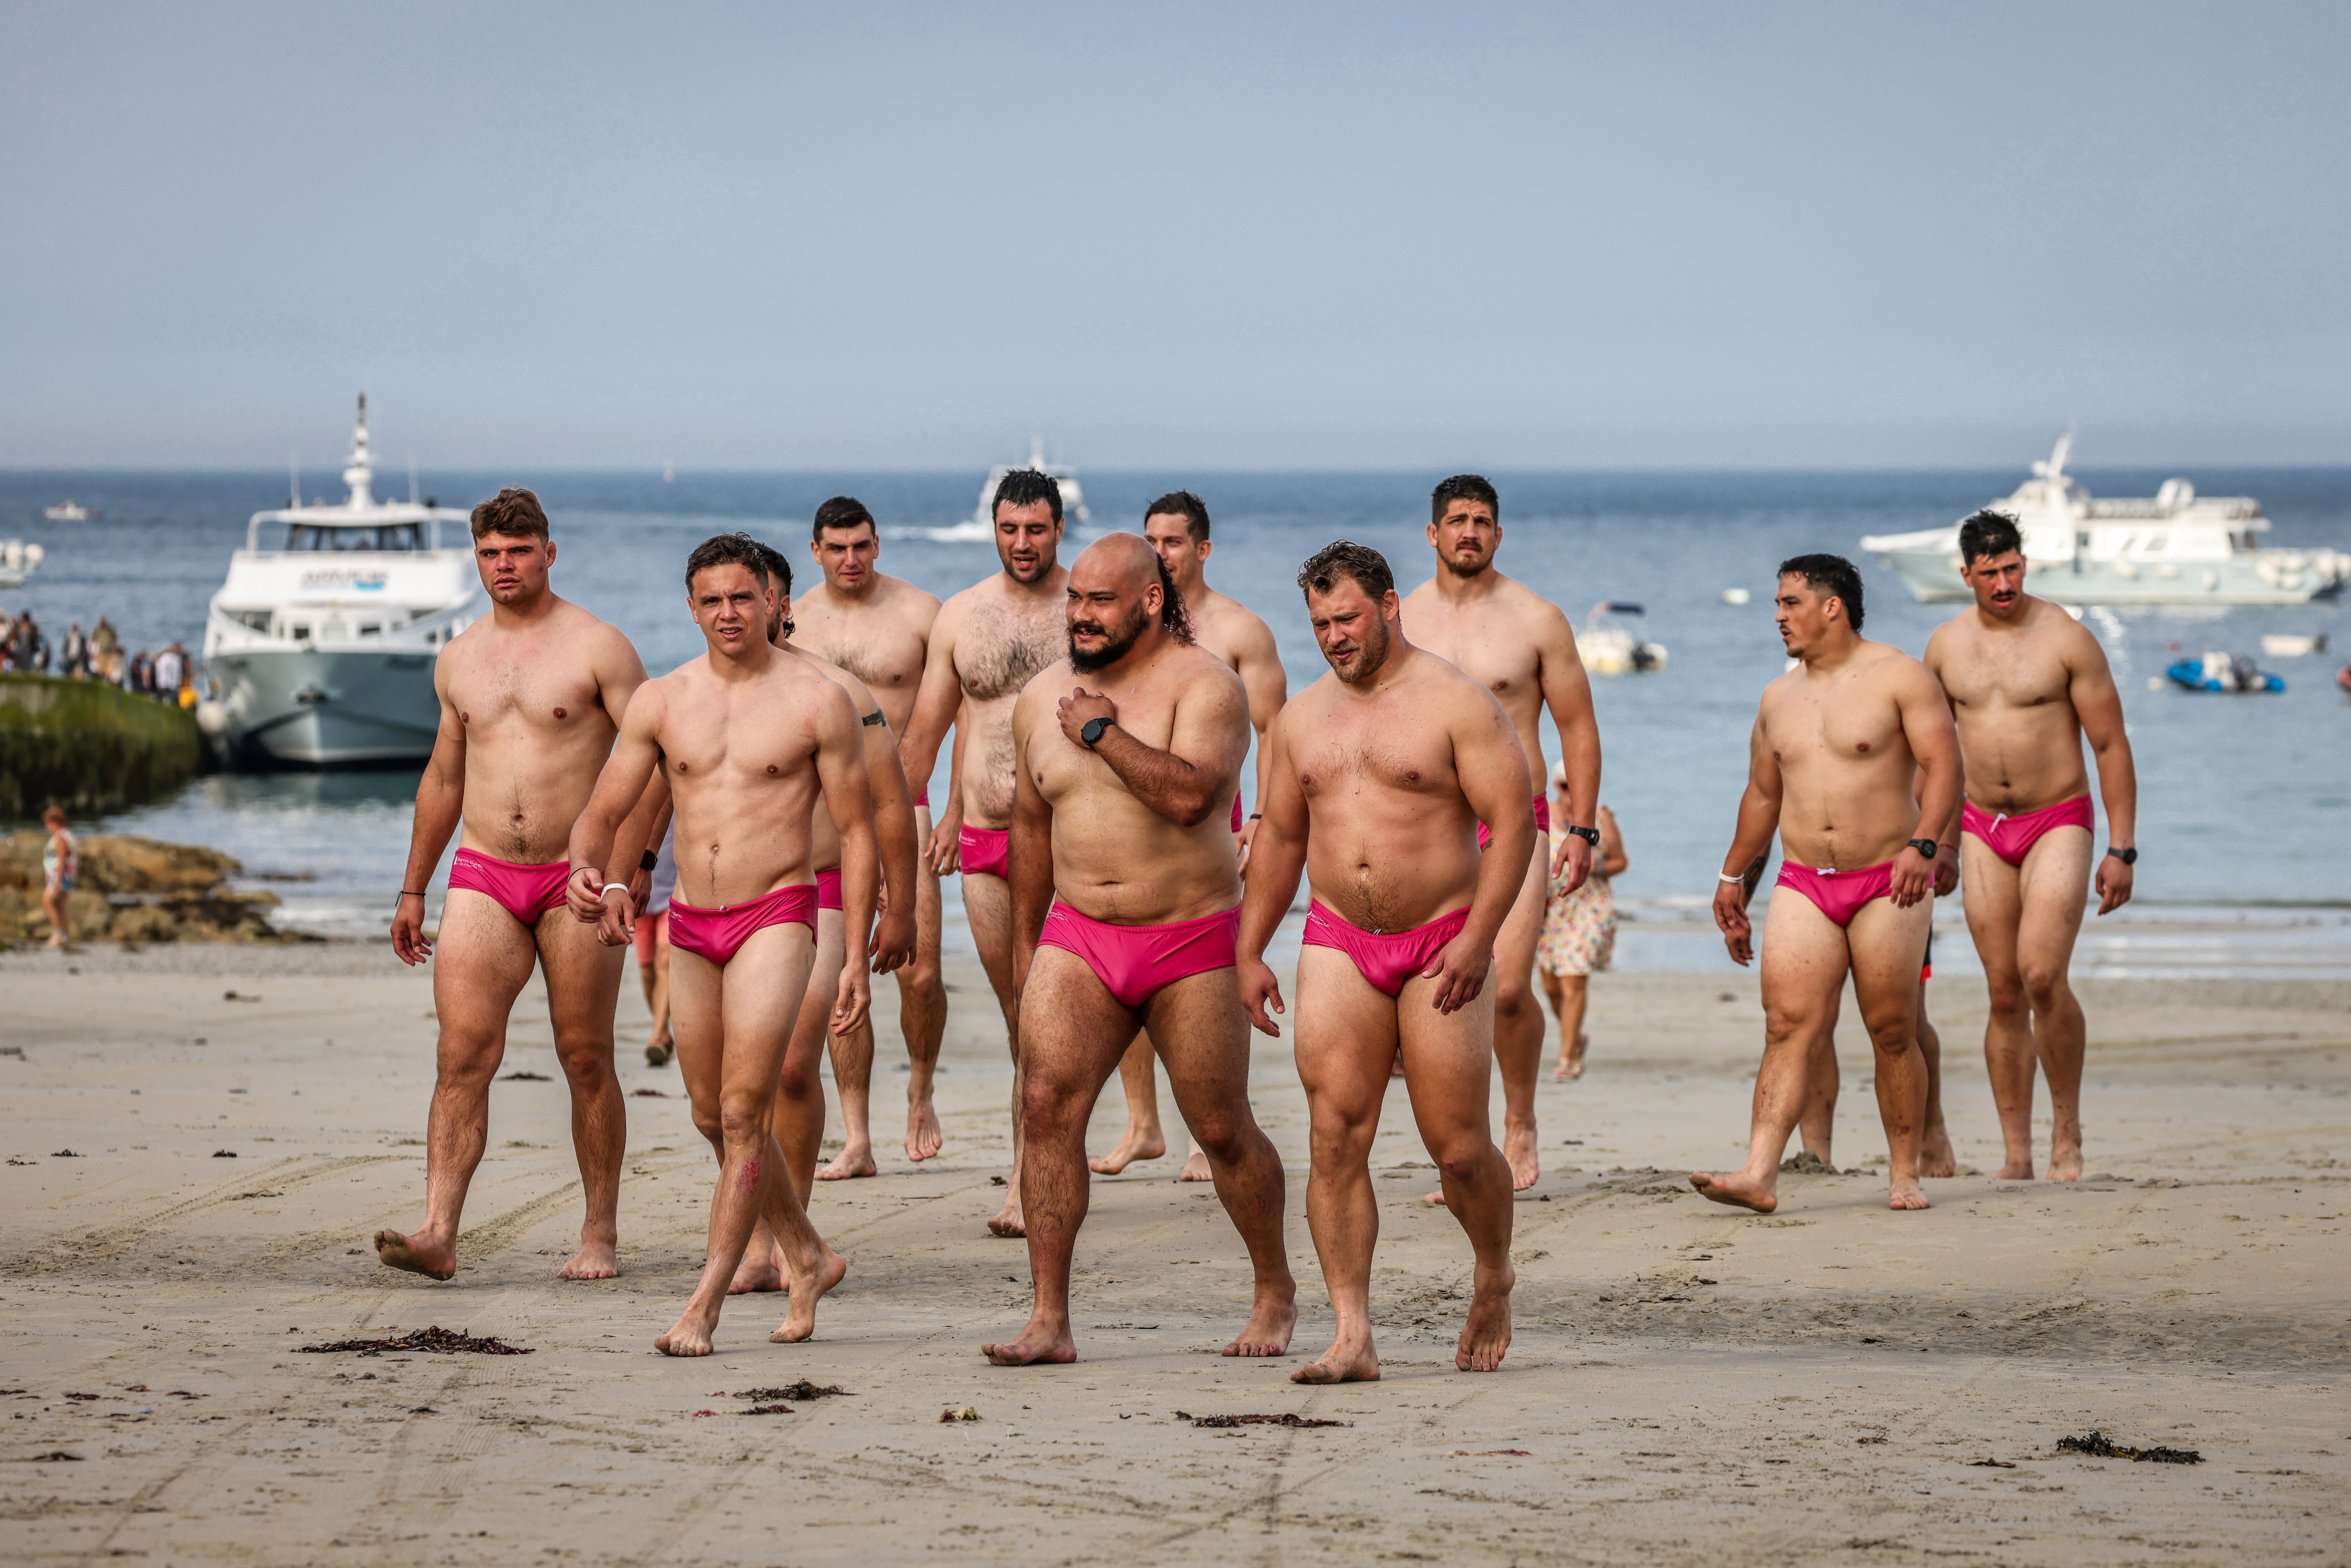 Les joueurs chiliens cette semaine sur la plage de Perros-Guirec en Bretagne, dans leurs slips roses offerts par les collectivités locales de la côte de granit... rose. LP/Fred Dugit